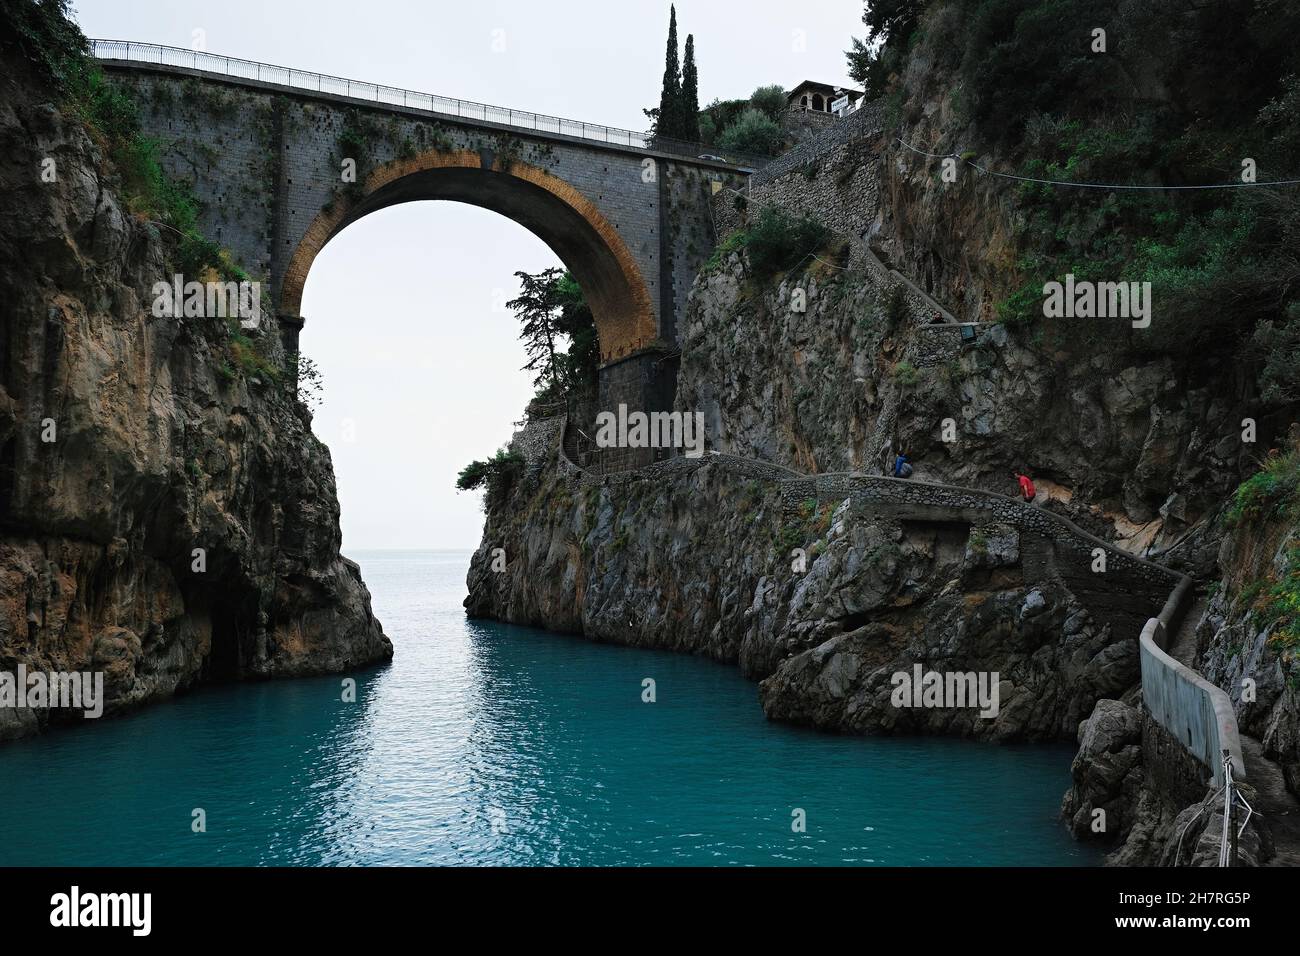 Fiordo di Furore Bridge and mediterranean sea(Fjord of Furore) , a beautiful hidden place in the province of Salerno , Amalfi coast, Italy Stock Photo